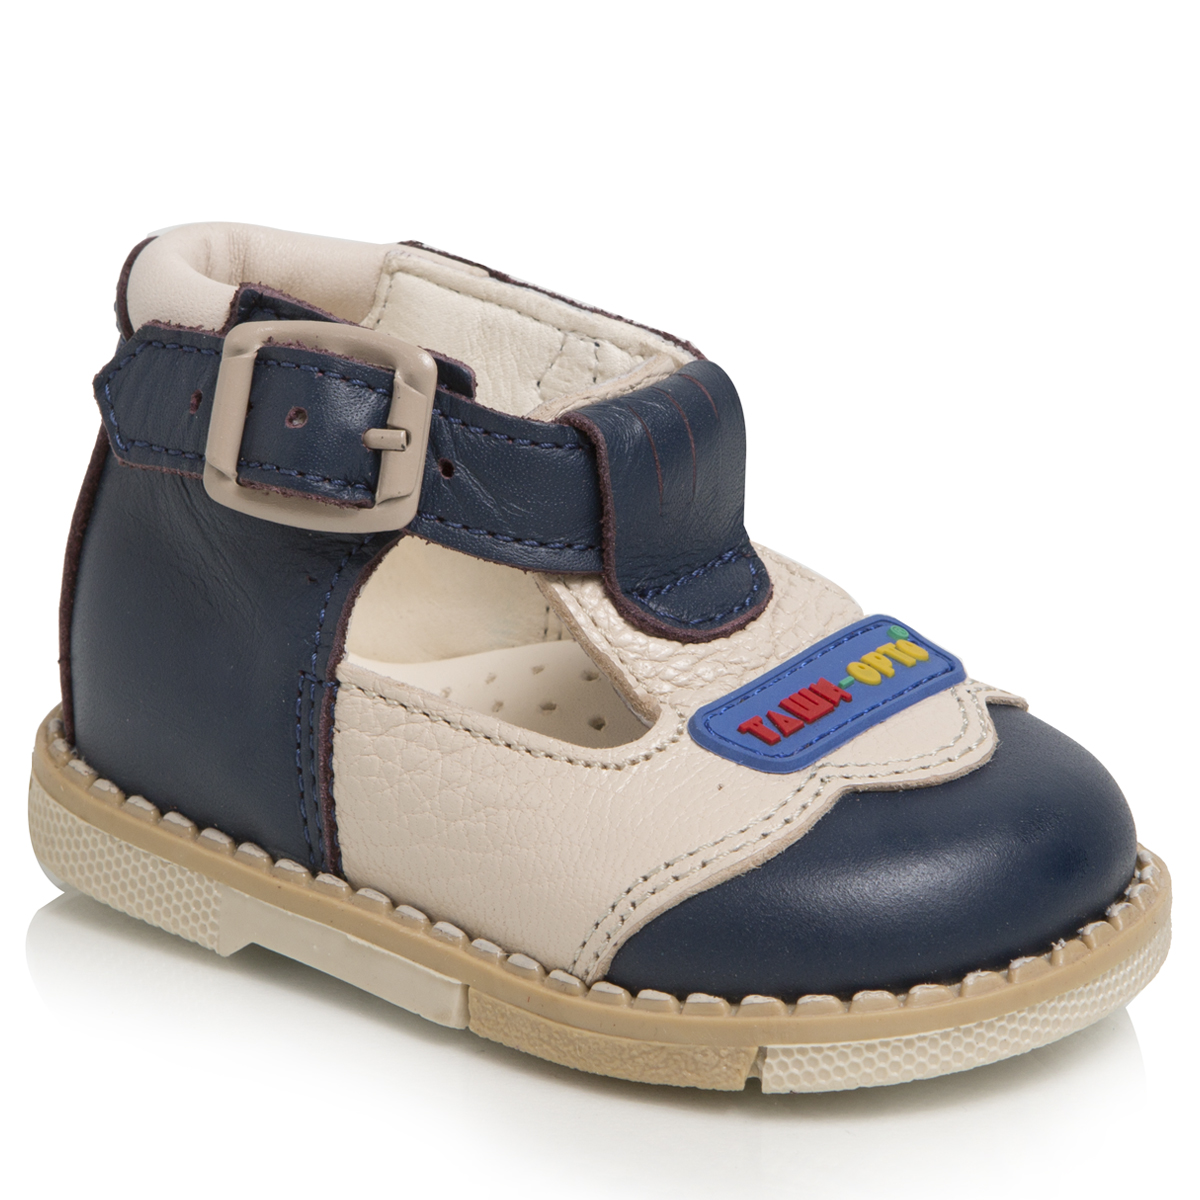 Туфли для мальчика Таши Орто, цвет: темно-синий, бежевый. 112-12. Размер 18